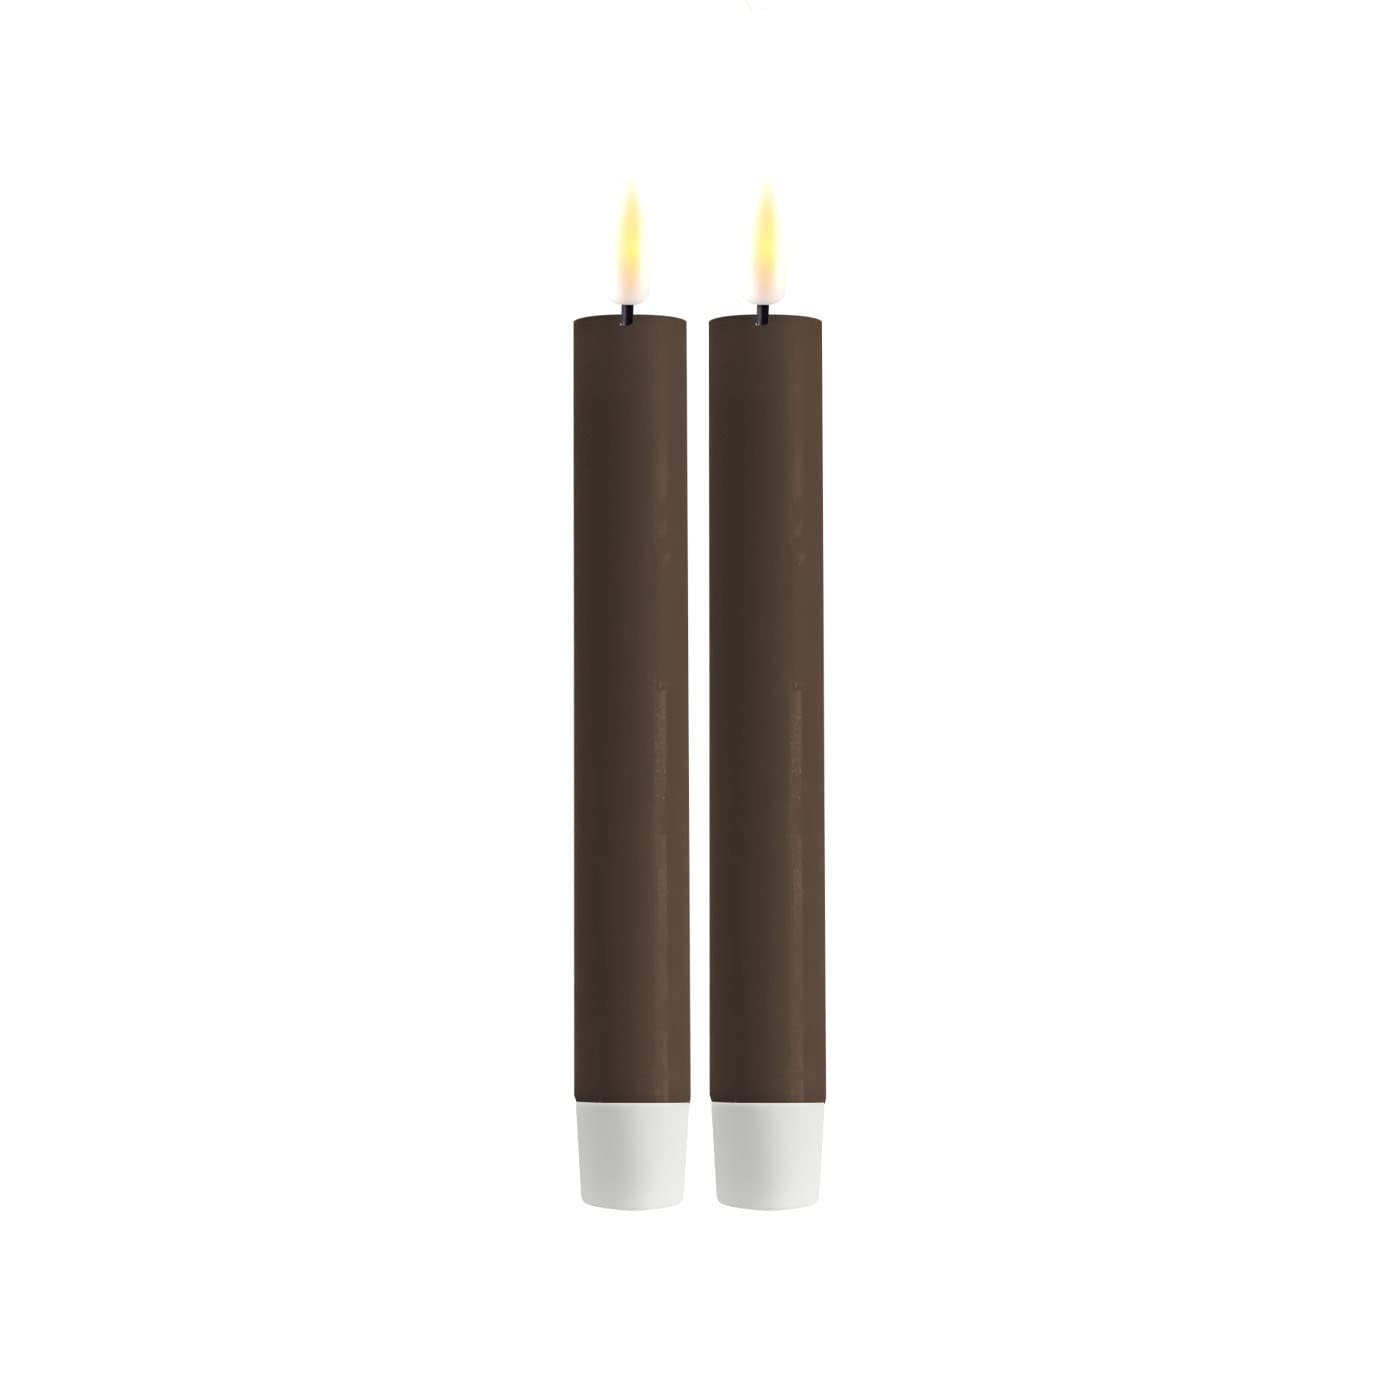 ReWu LED Kerze Deluxe Homeart, Indoor LED-Kerze mit realistischer Flamme auf einem Echtwachsspiegel, warmweißes Licht - Mokka Stabkerze 15 cm